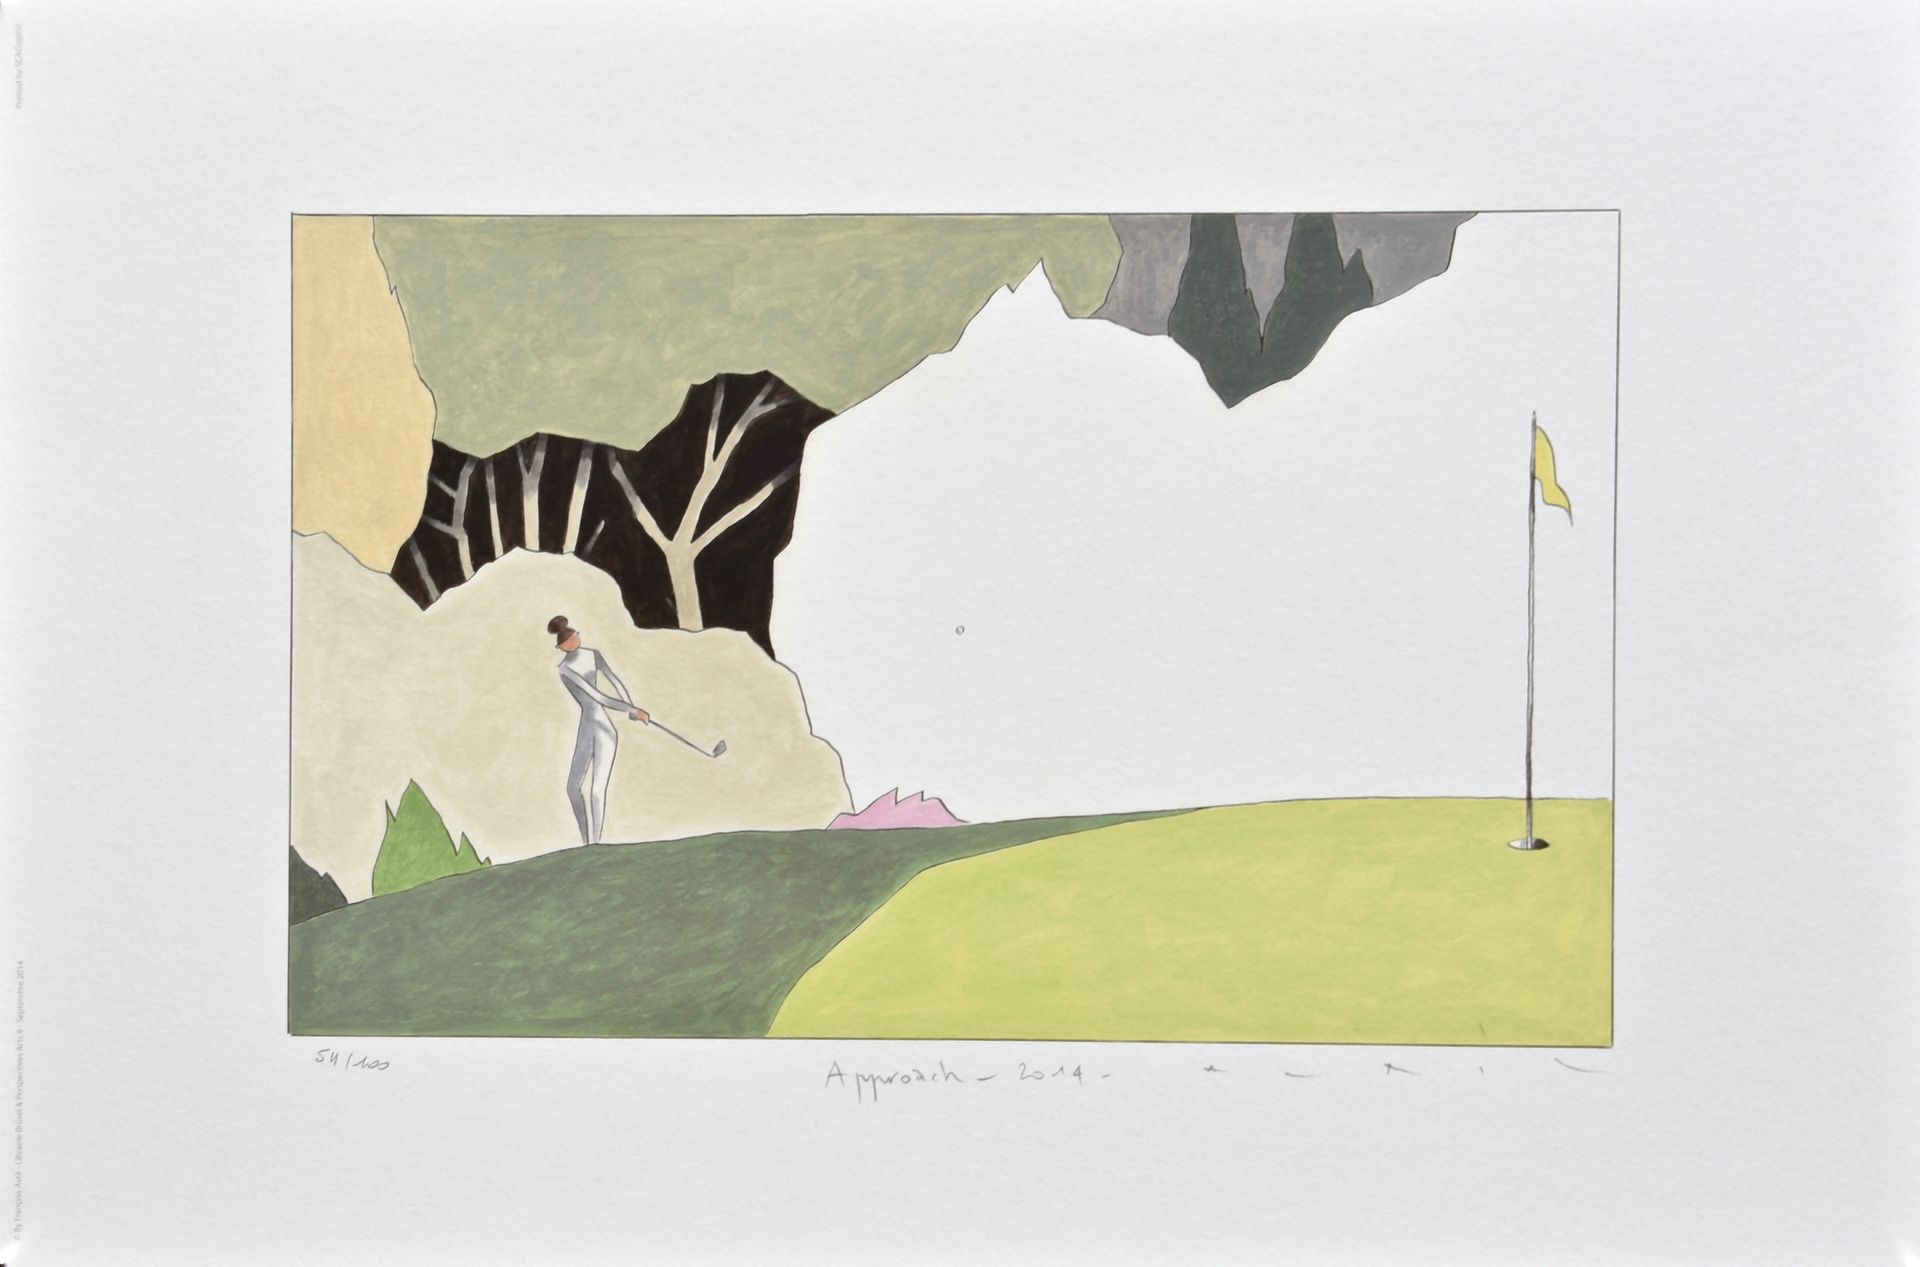 François AVRIL François Avril

Approccio al golf

Poster firmato e numerato

Edi&hellip;